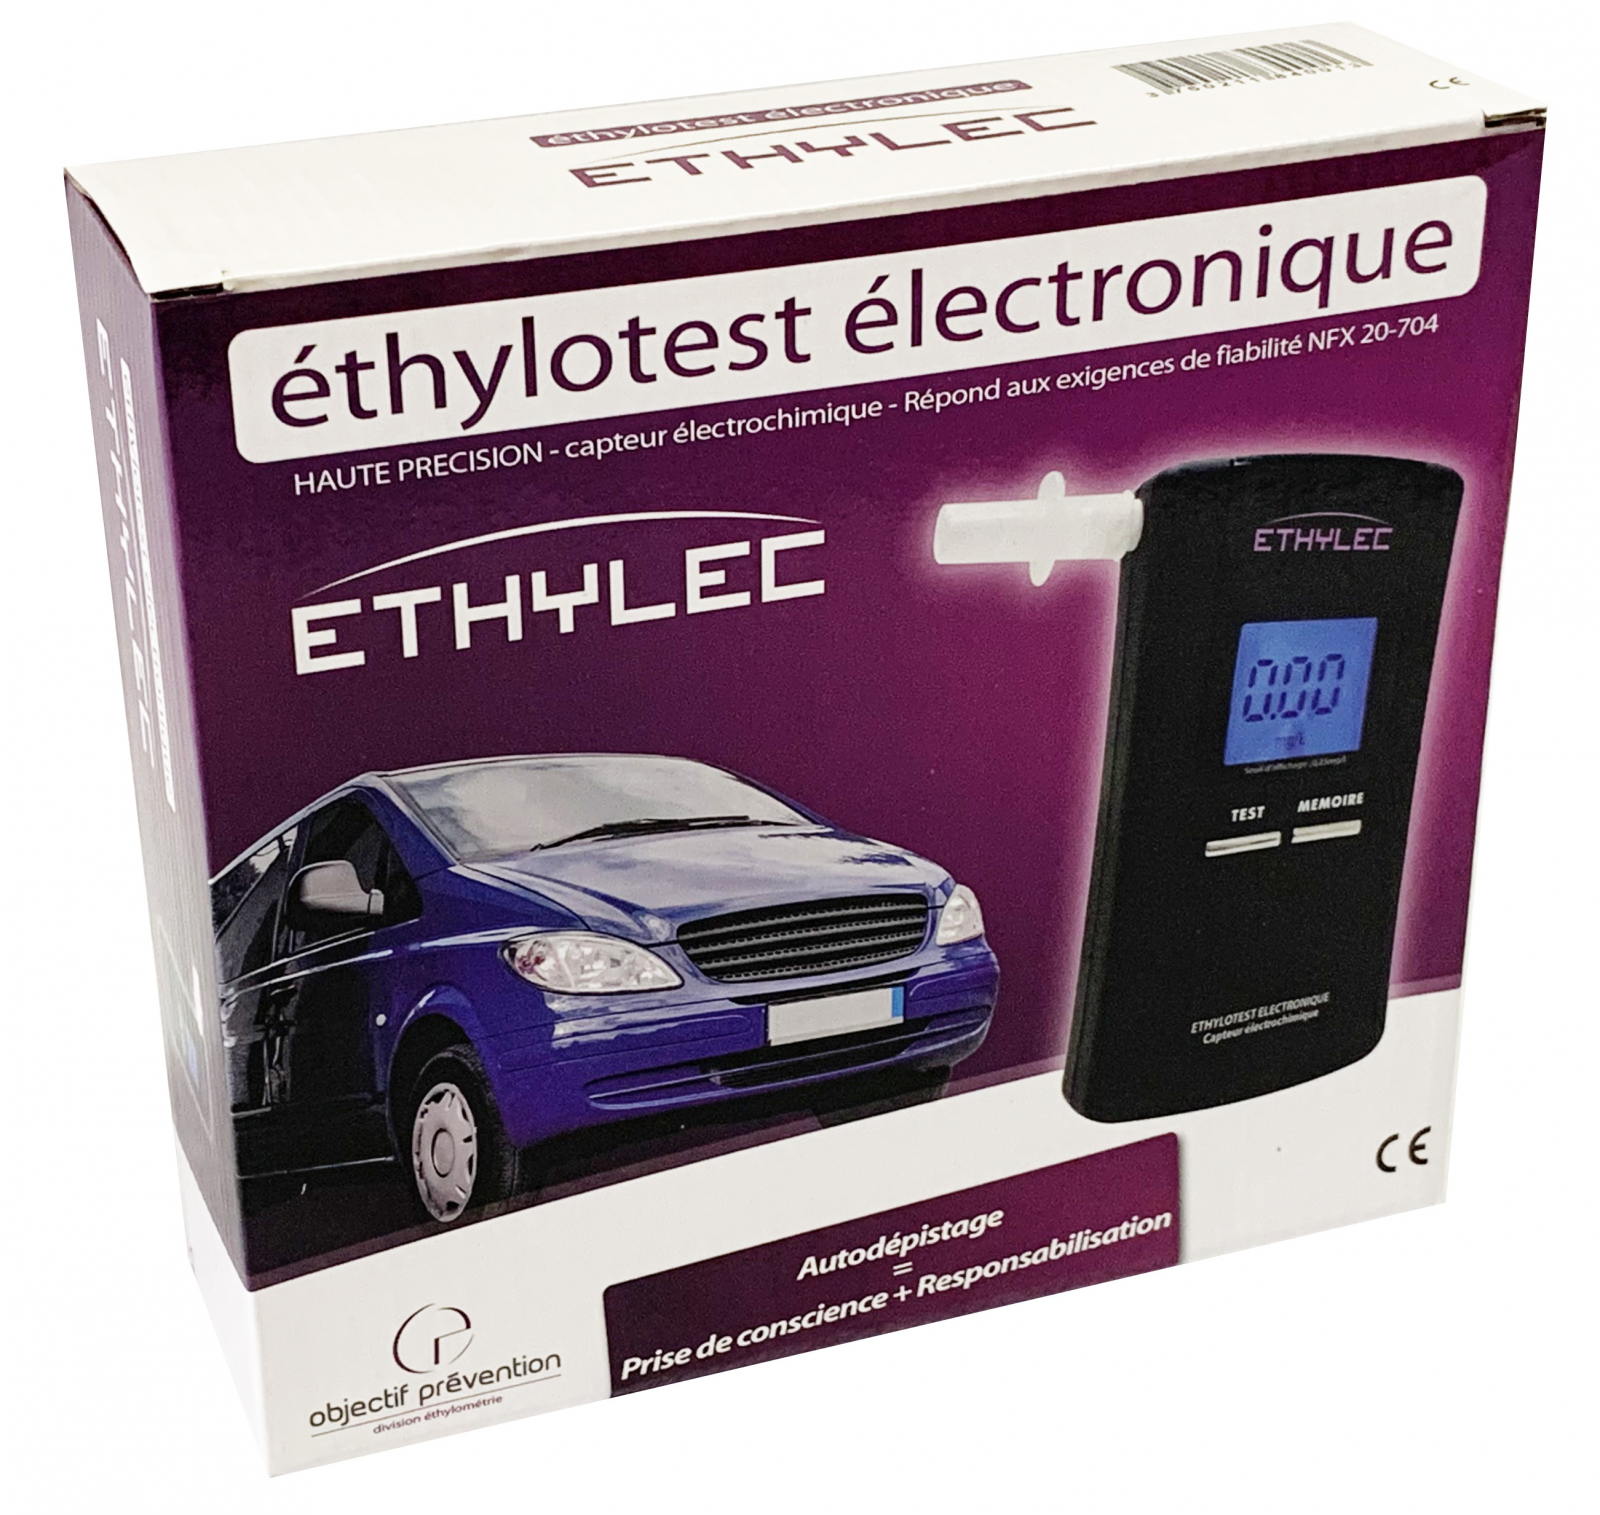 Ethylec ethylotest électronique - ethylec_0